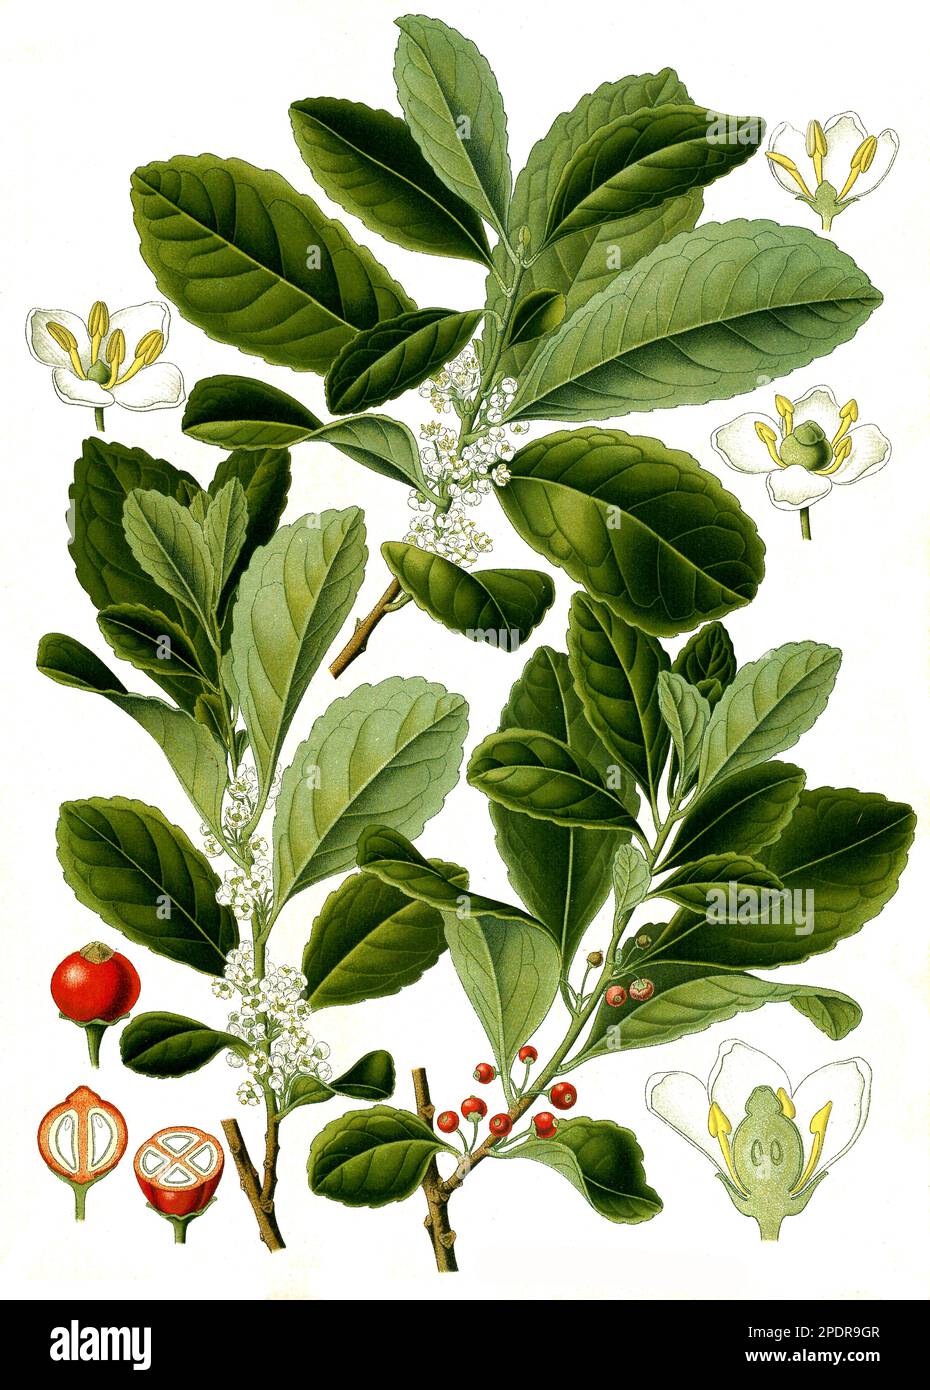 Heilpflanze, Mate-Strauch (Ilex paraguariensis), auch Matebaum genannt, ist eine Pflanzenart aus der Gattung der Stechpalmen, Historisch, digital restaurierte Reproduktion von einer Vorlage aus dem 18. Jahrhundert Stock Photo